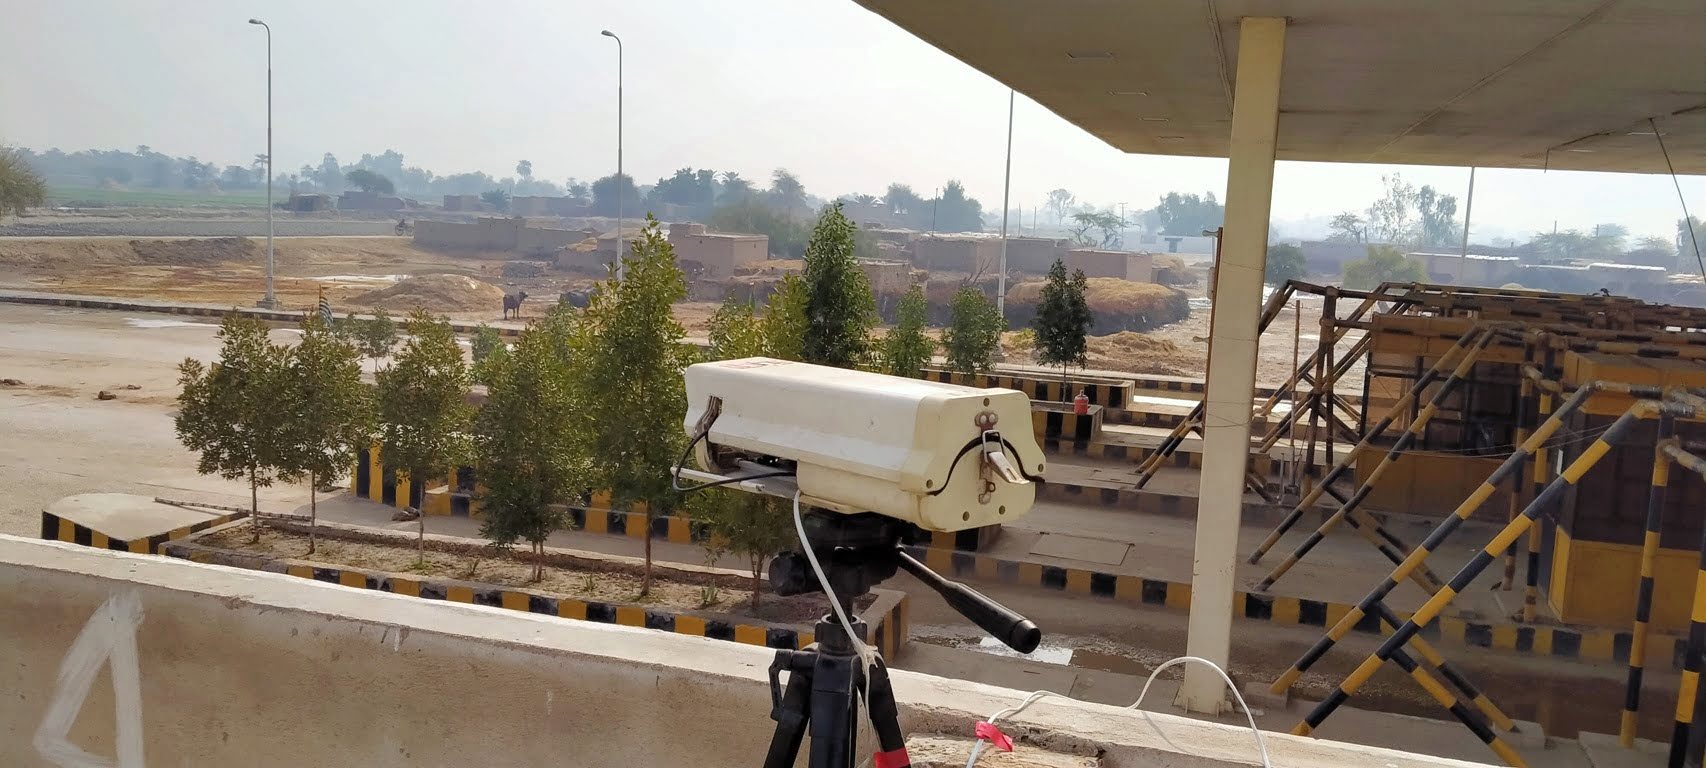 Traffic Study for Karachi Peshawar Motorway (Hyderabad – Sukkur Section)